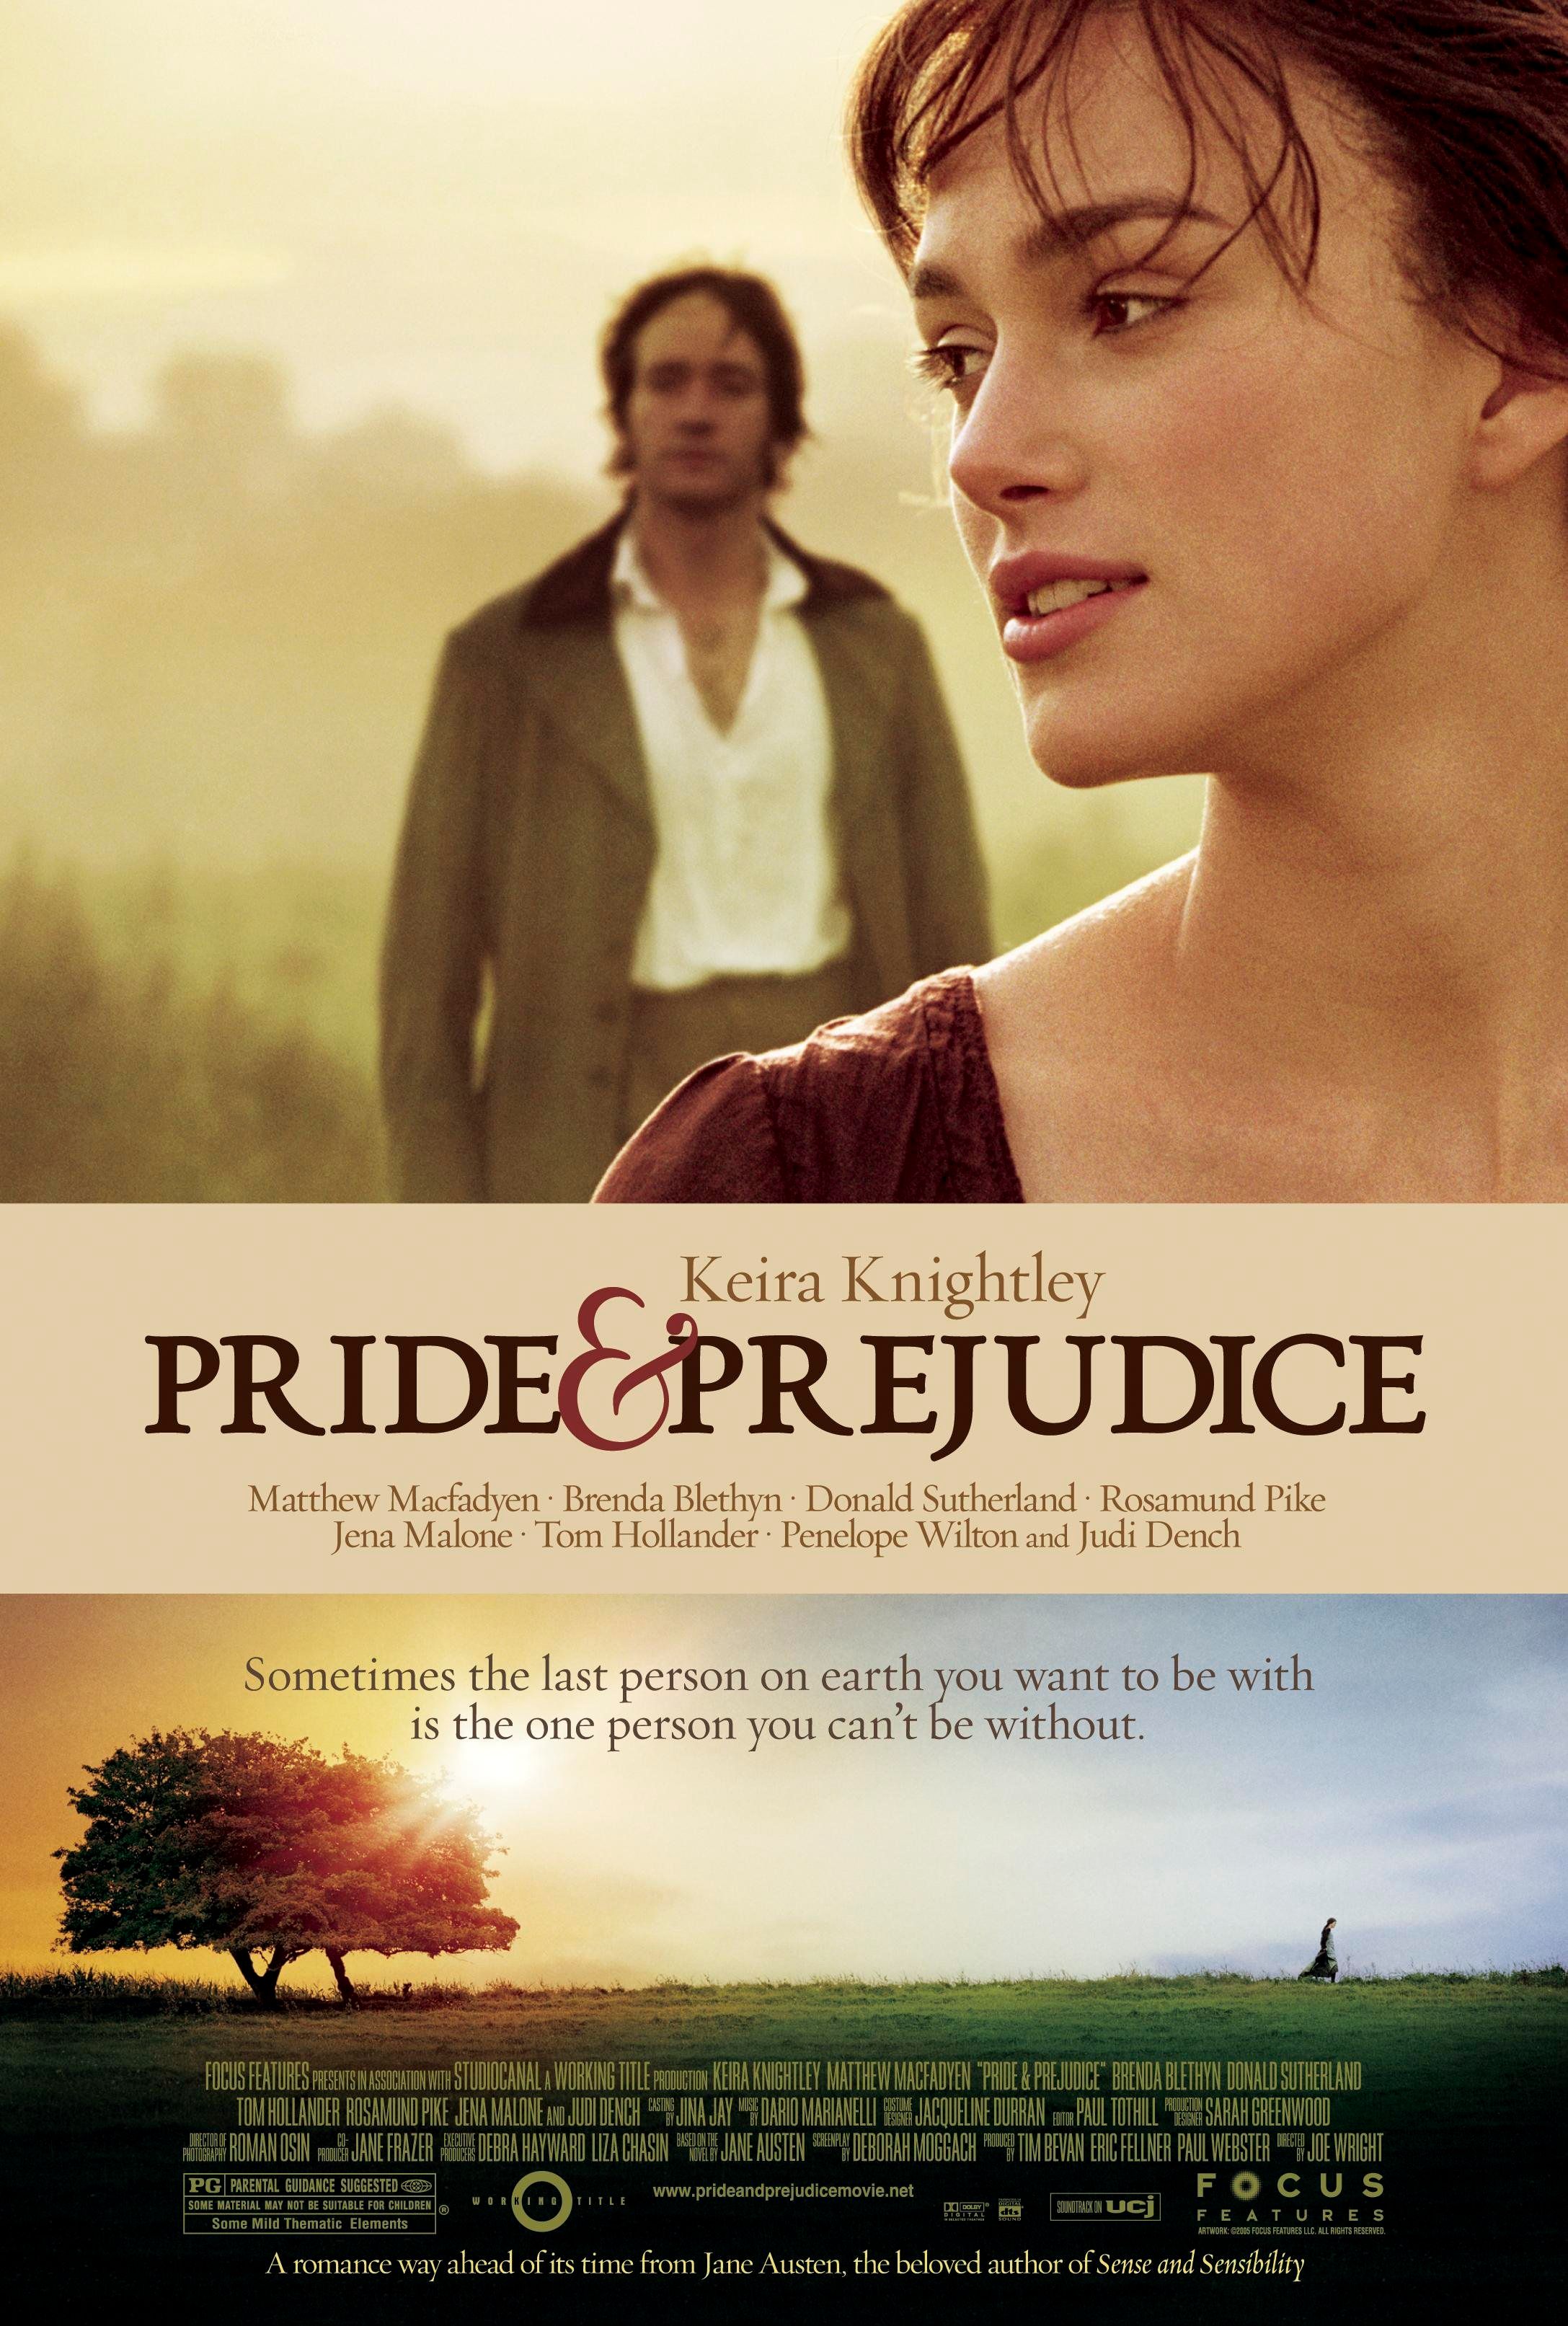 Pride and Prejudice 2005 Film Poster